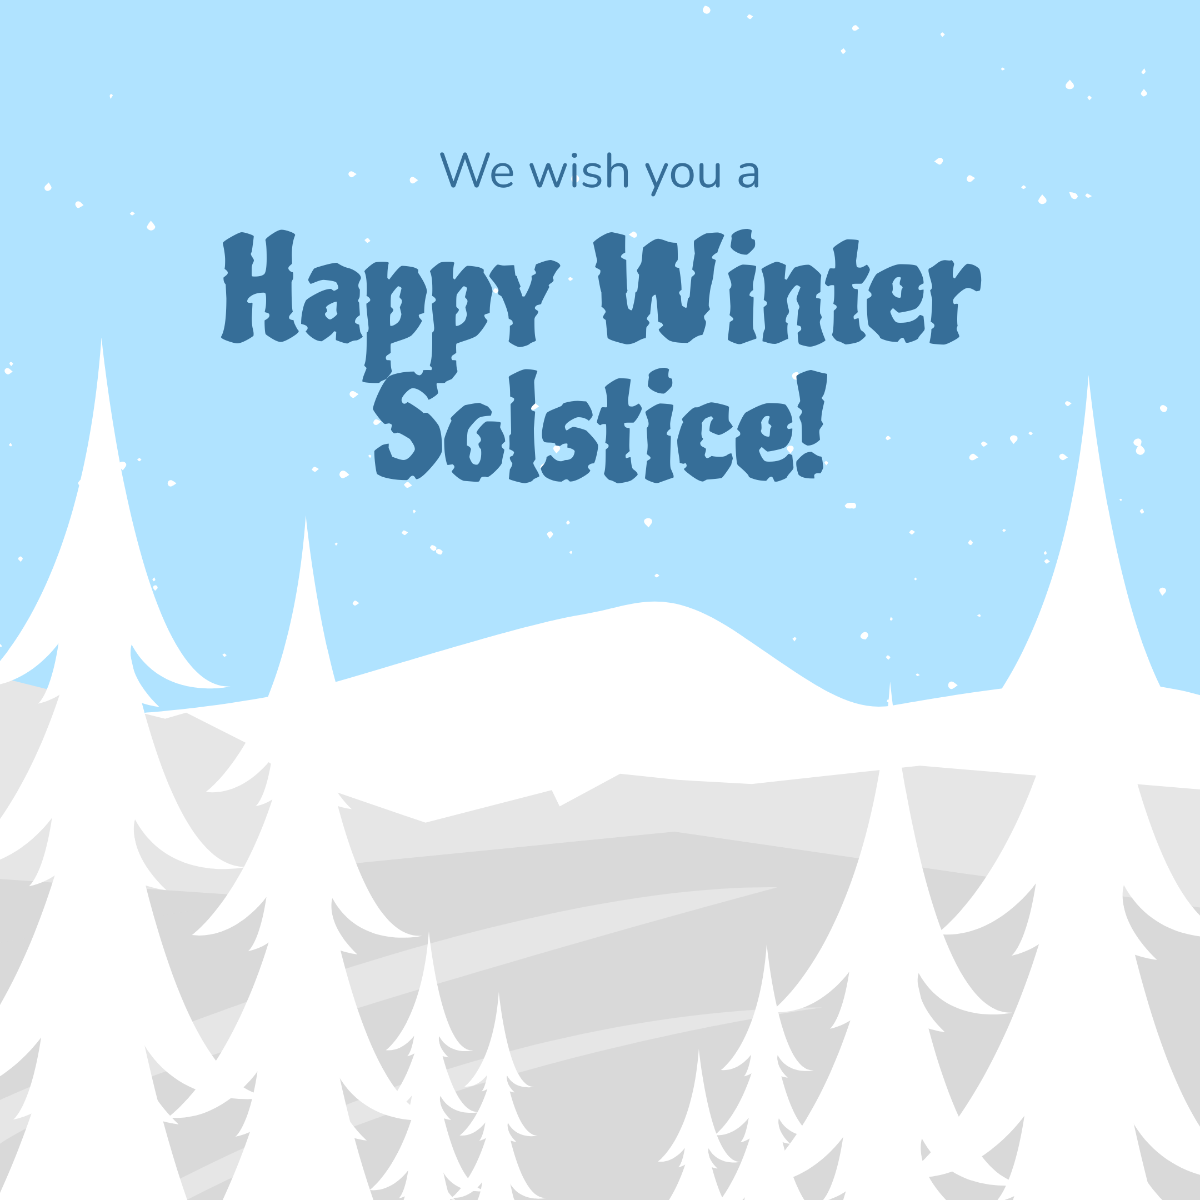 Happy Winter Solstice Instagram Post Template